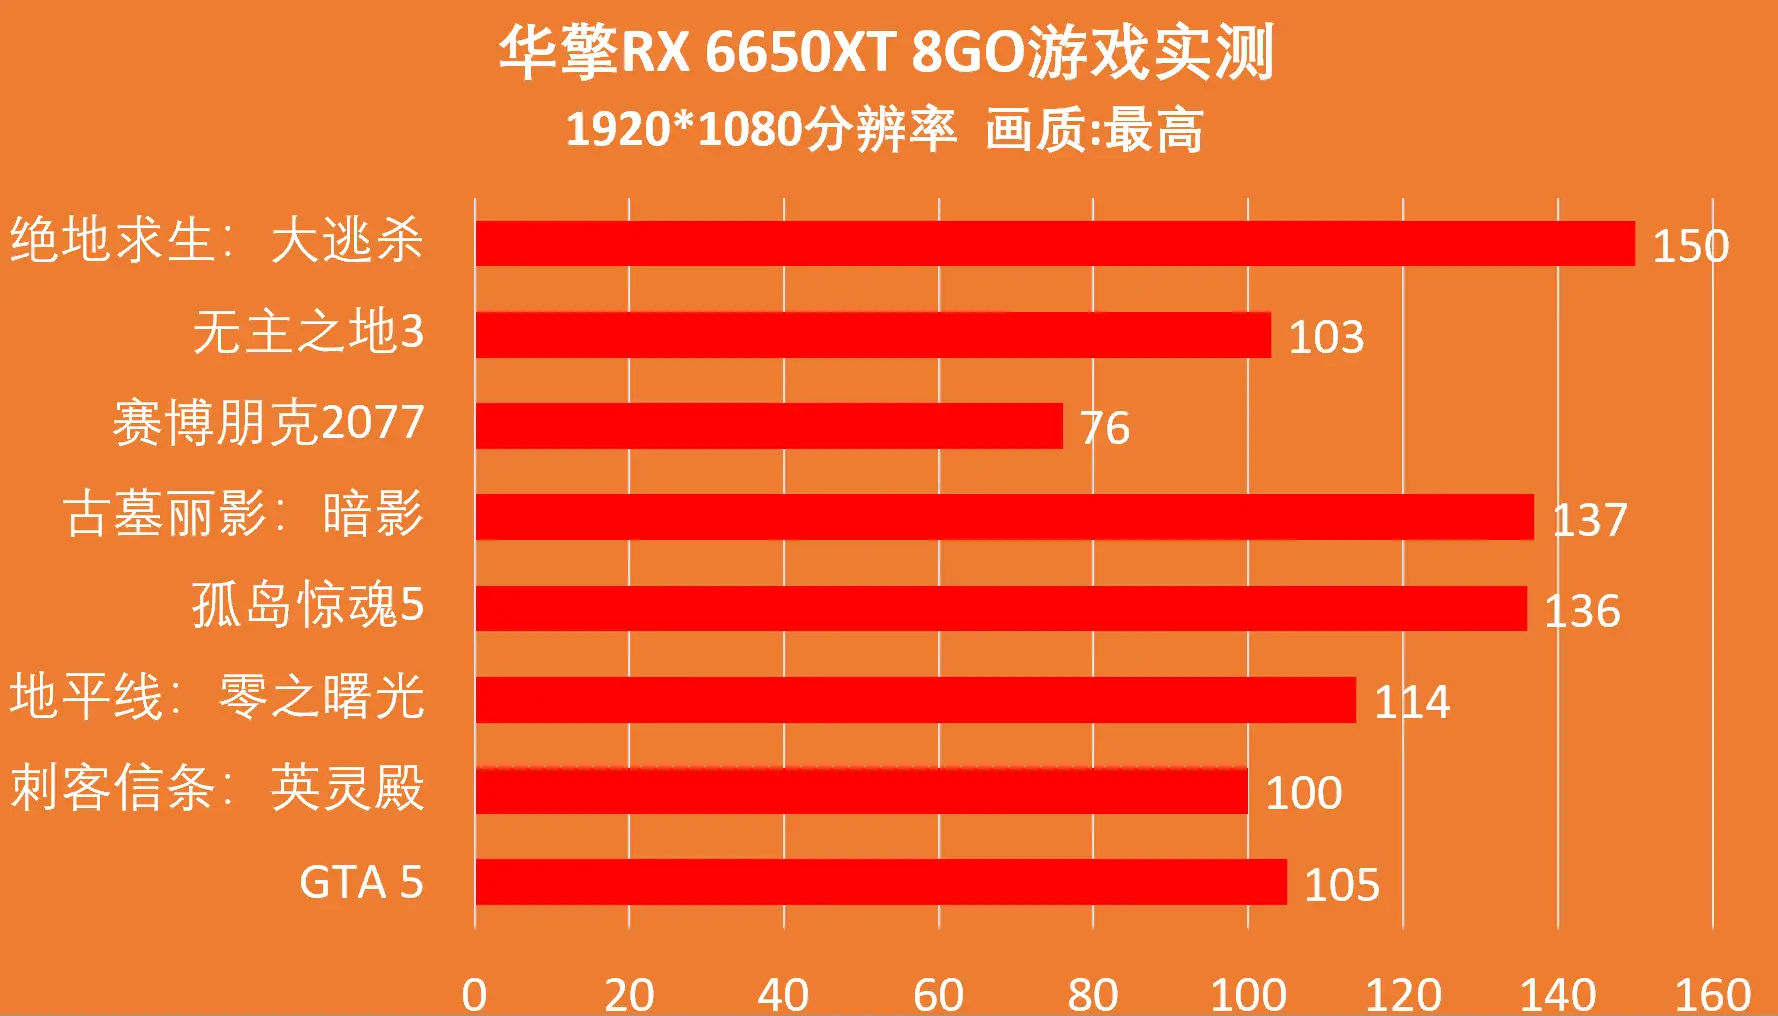 DDR4 内存频率提升电脑性能，12 代 CPU 与之完美搭配  第10张